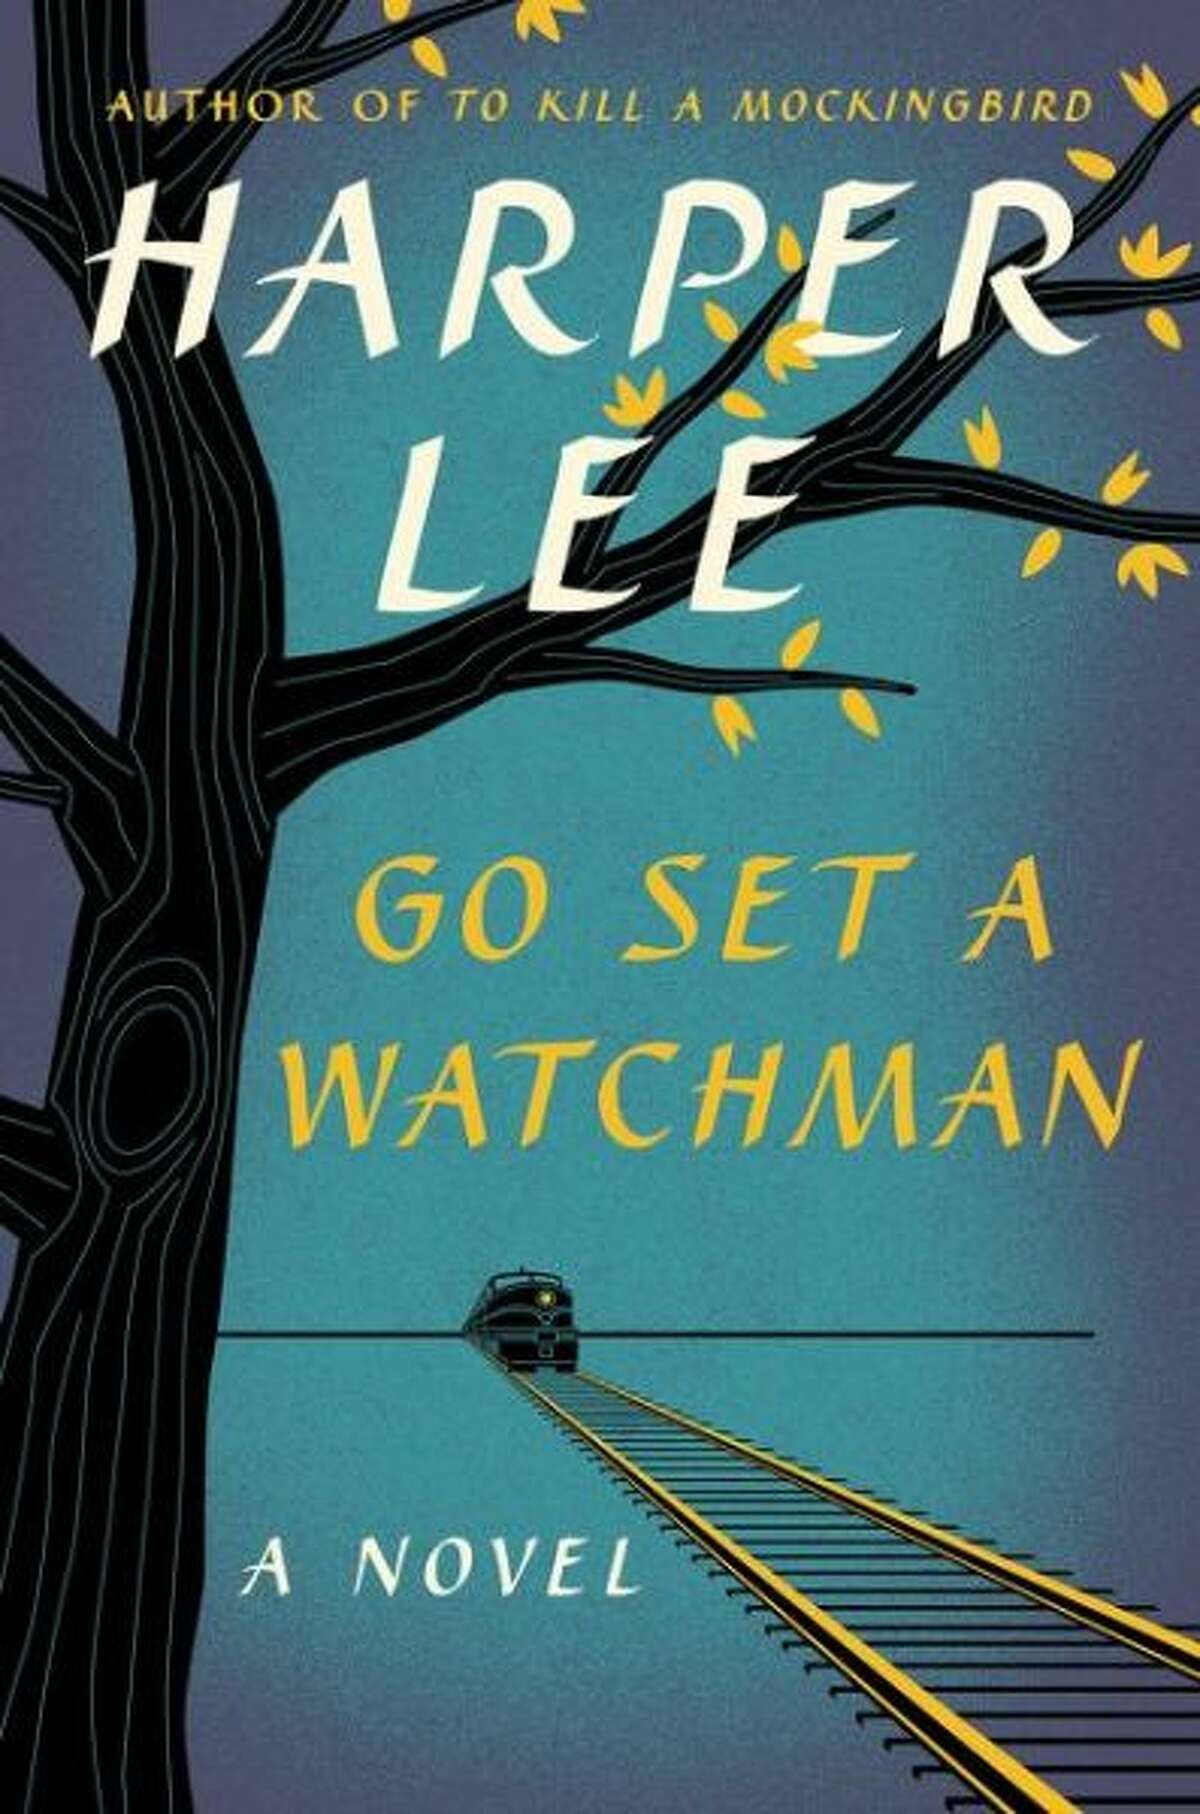 3) Go Set a Watchman by Harper Lee